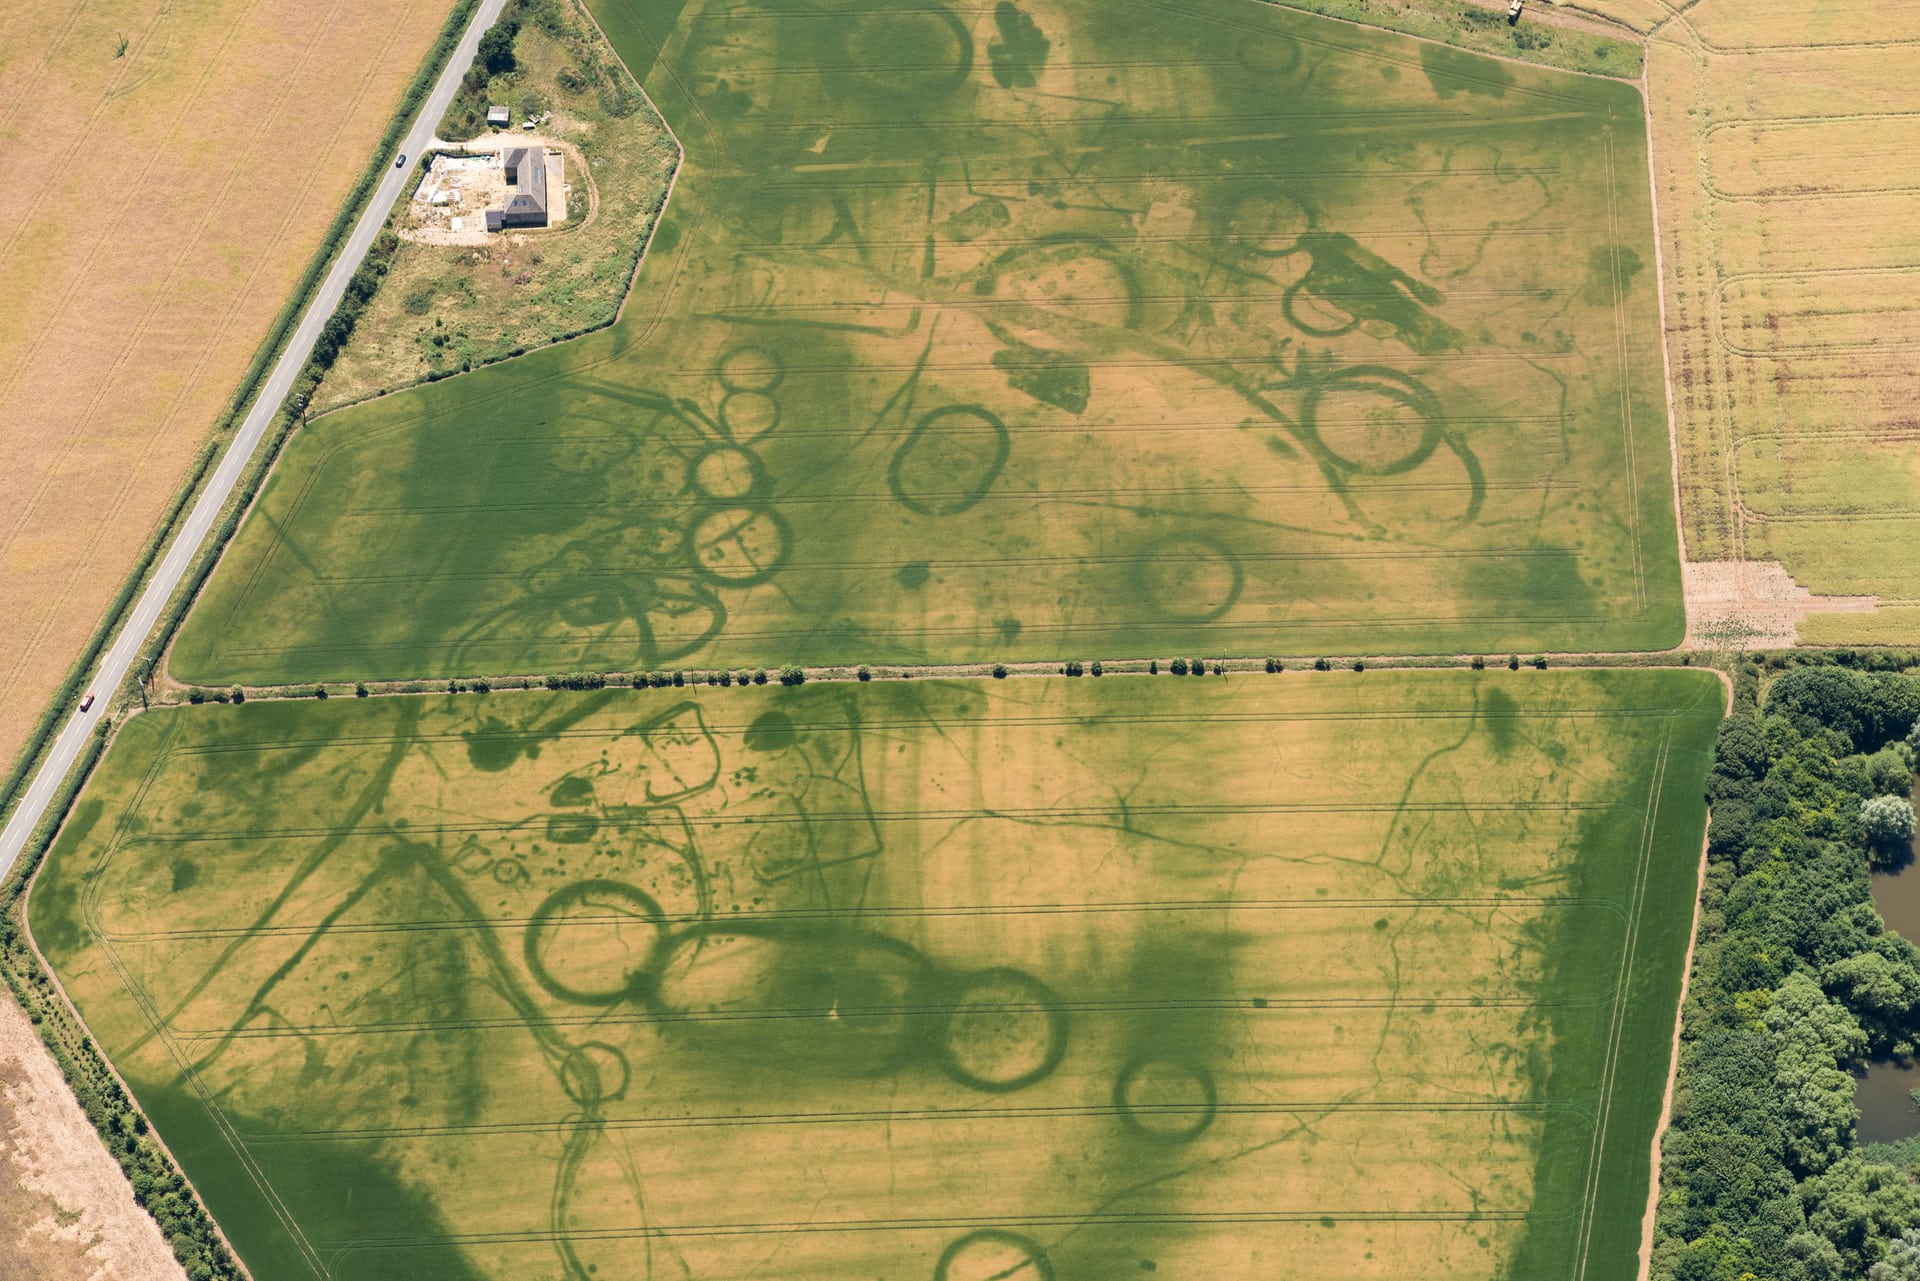 Egy i.e. 4000-700 közötti időkből származó telep, temetési emlékhelyekkel, az oxfordshire-i Eynsham közelében